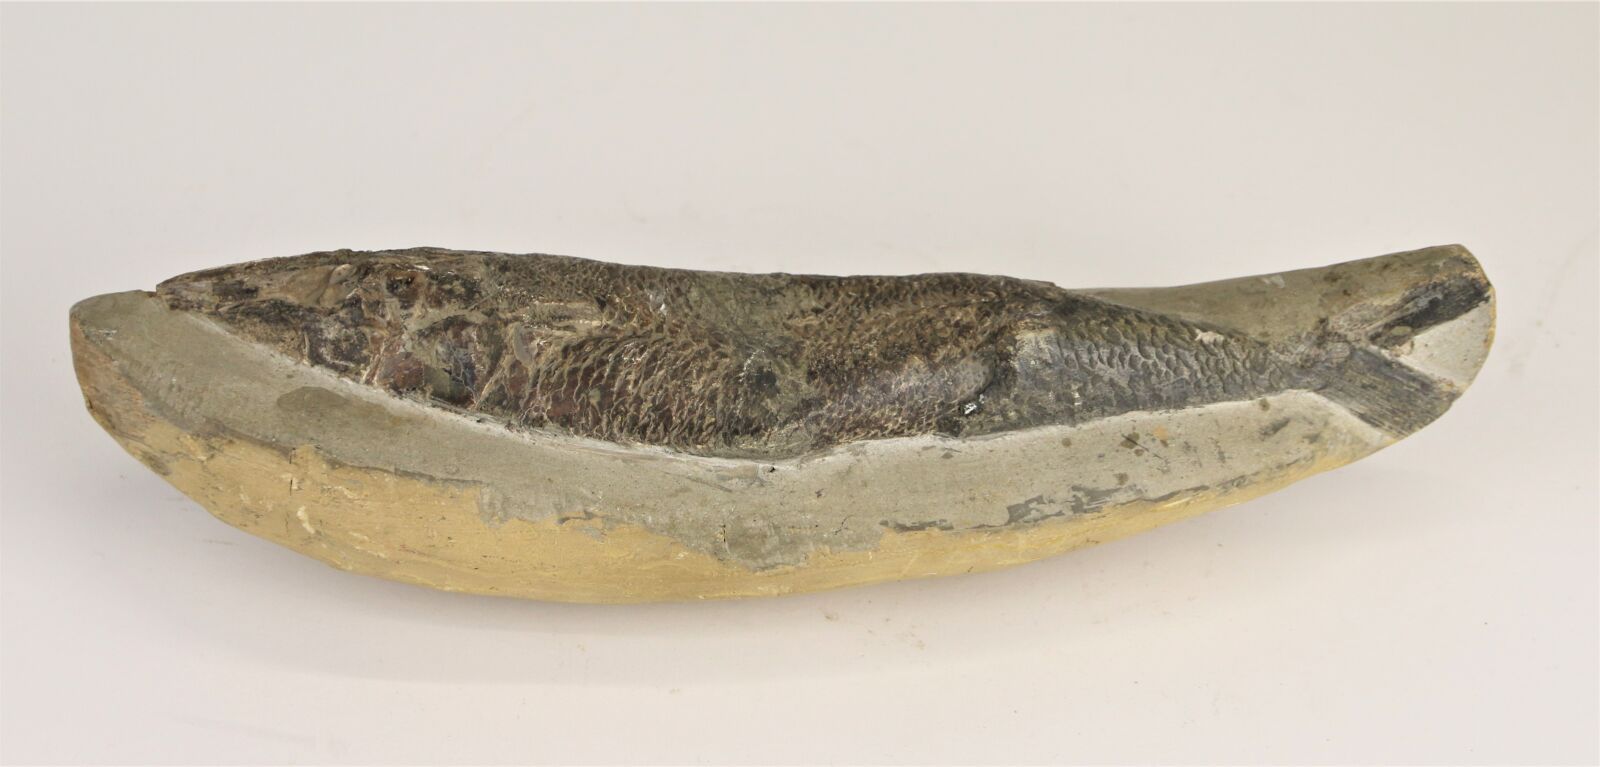 Null Fossile di pesce.
Lunghezza: 30 cm